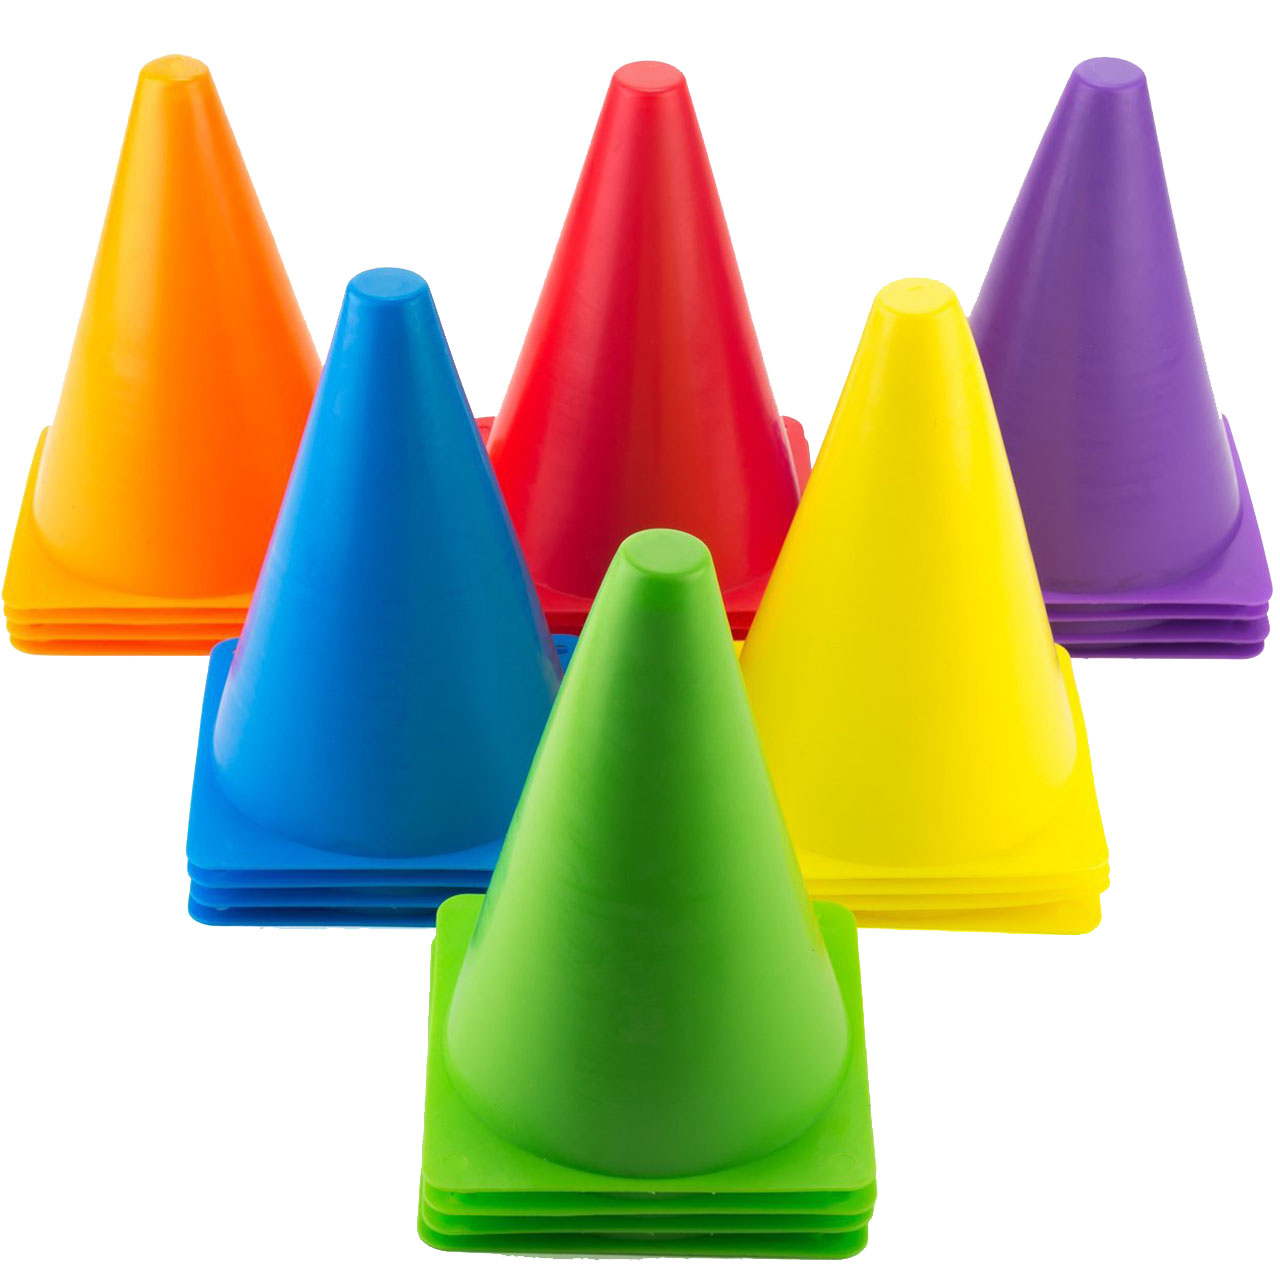 مانع تمرین مدل Training Cones 2020 در 5 رنگ مجموعه 25 عددی به همراه پاوربالانس